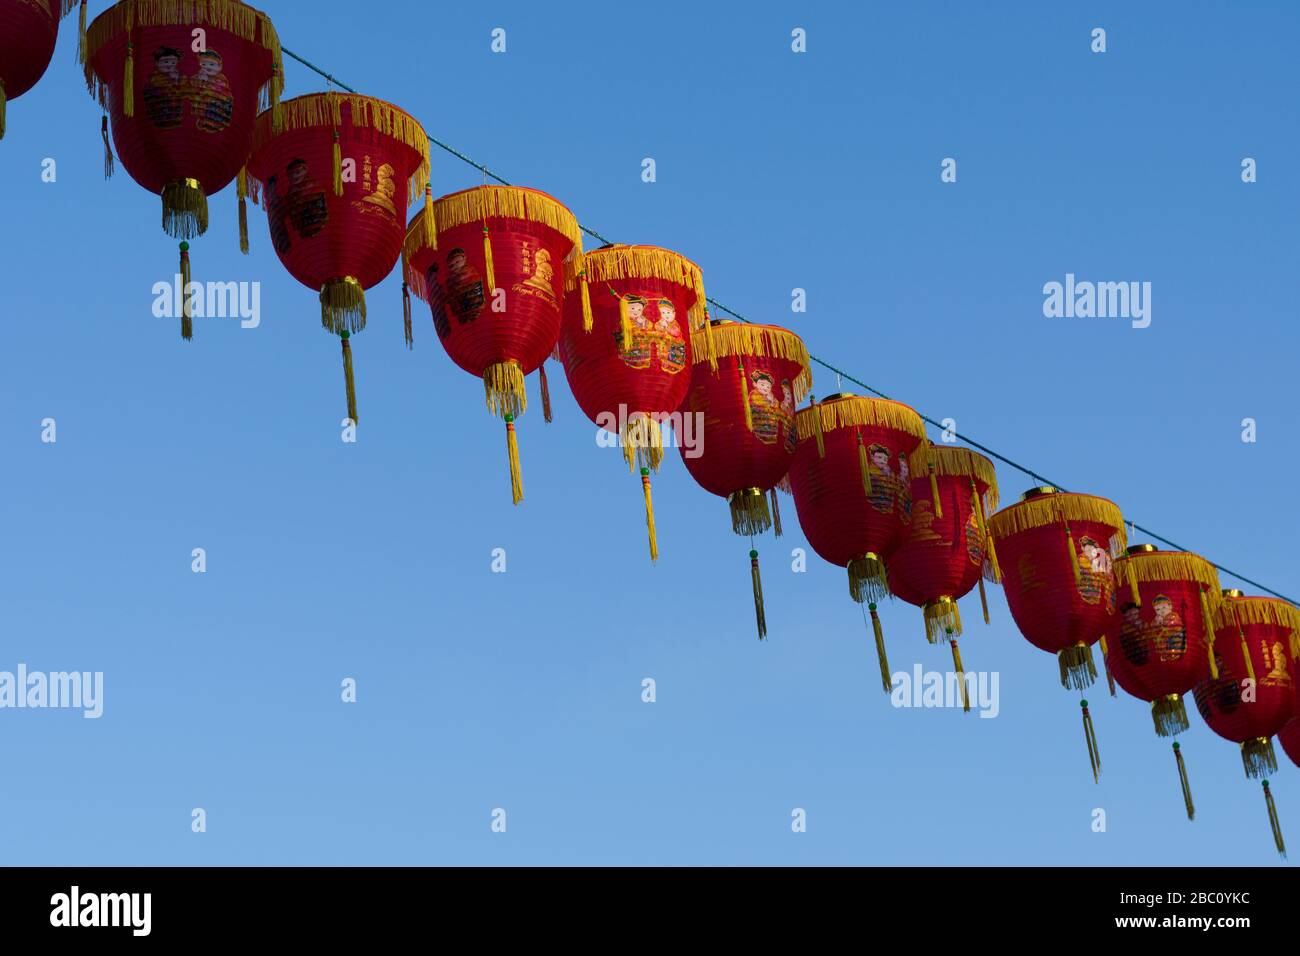 Lanternes chinoises pour la nouvelle année chinoise, Chinatown, Gerrard Street, Londres, Royaume-Uni Banque D'Images